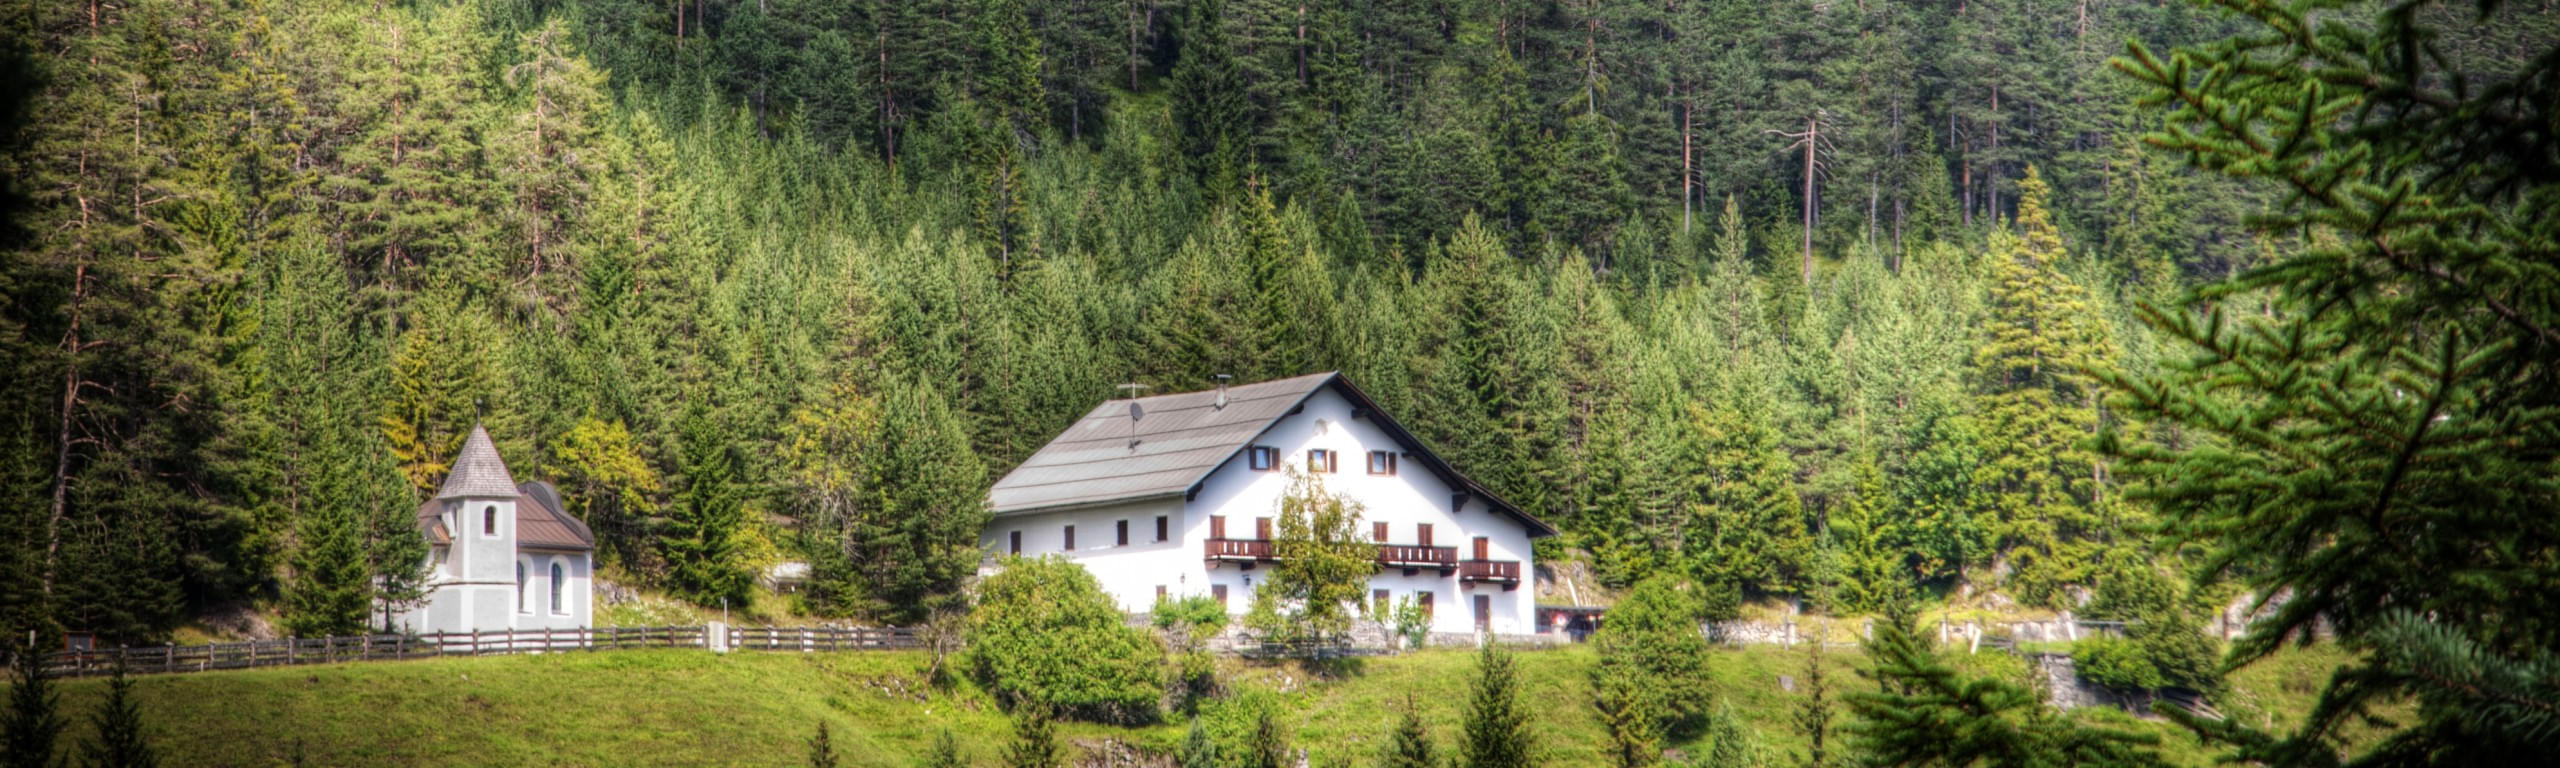 Schweige Retreat - Ein Wochenende der Aufmerksamkeit in den Tiroler Alpen